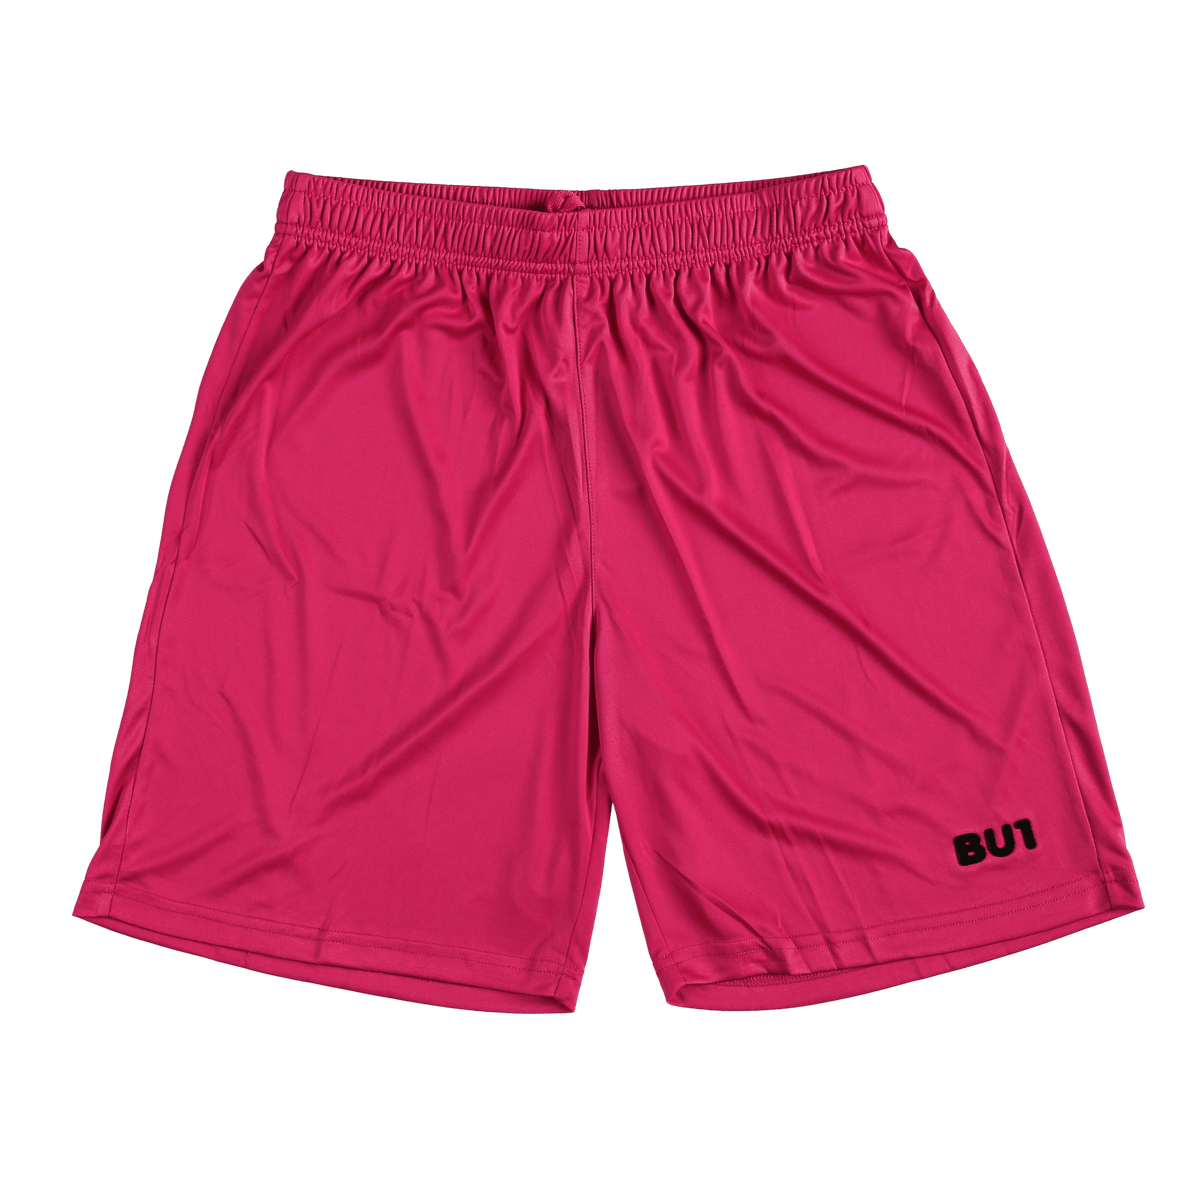 Pantalón corto BU1 20 rosa